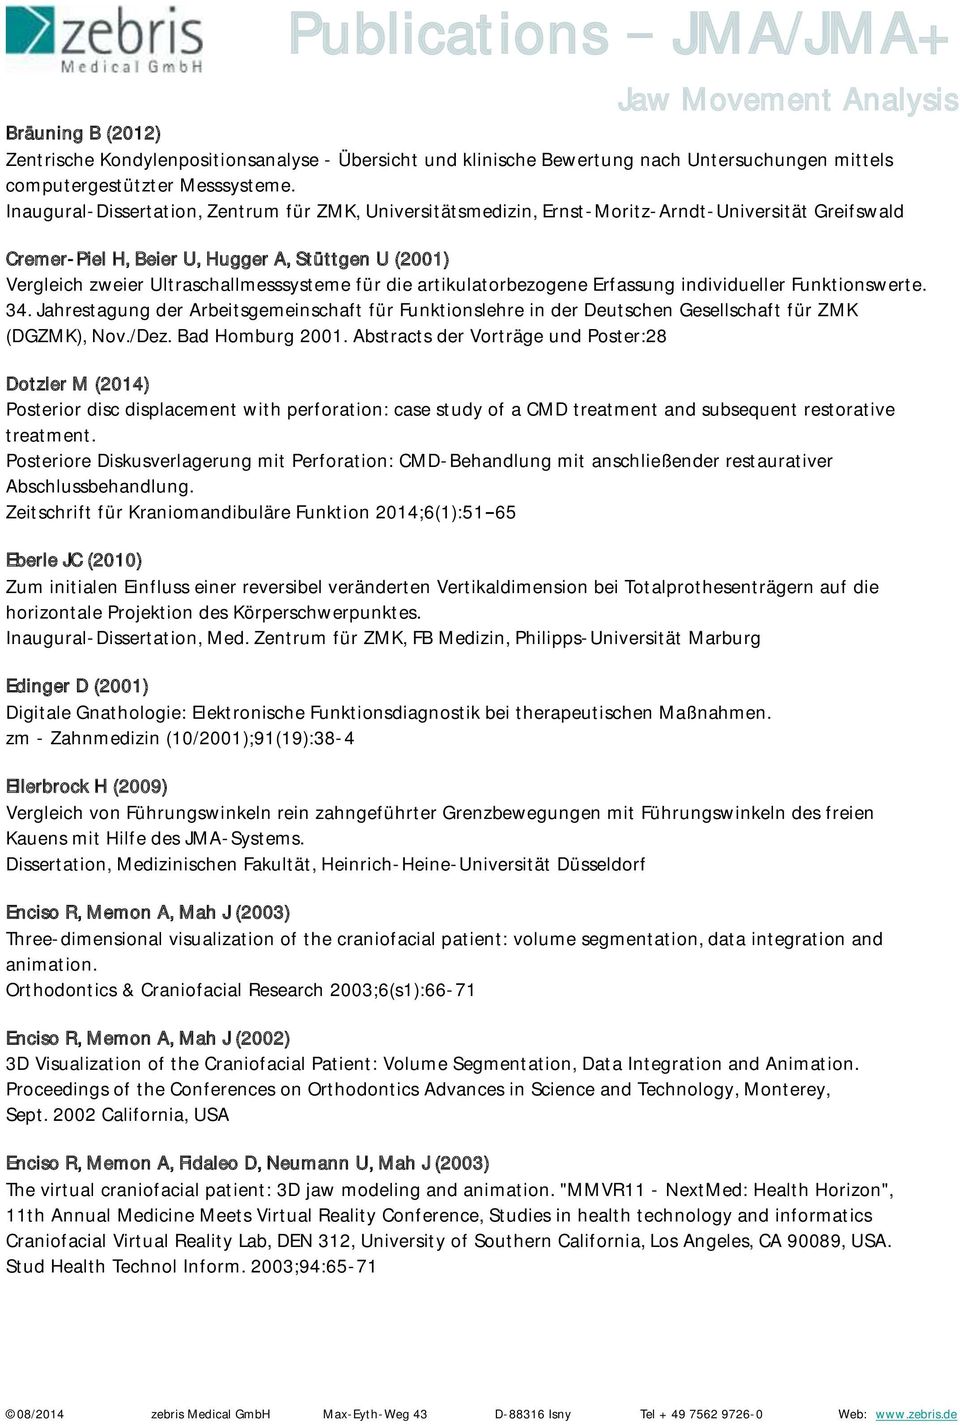 die artikulatorbezogene Erfassung individueller Funktionswerte. 34. Jahrestagung der Arbeitsgemeinschaft für Funktionslehre in der Deutschen Gesellschaft für ZMK (DGZMK), Nov./Dez. Bad Homburg 2001.